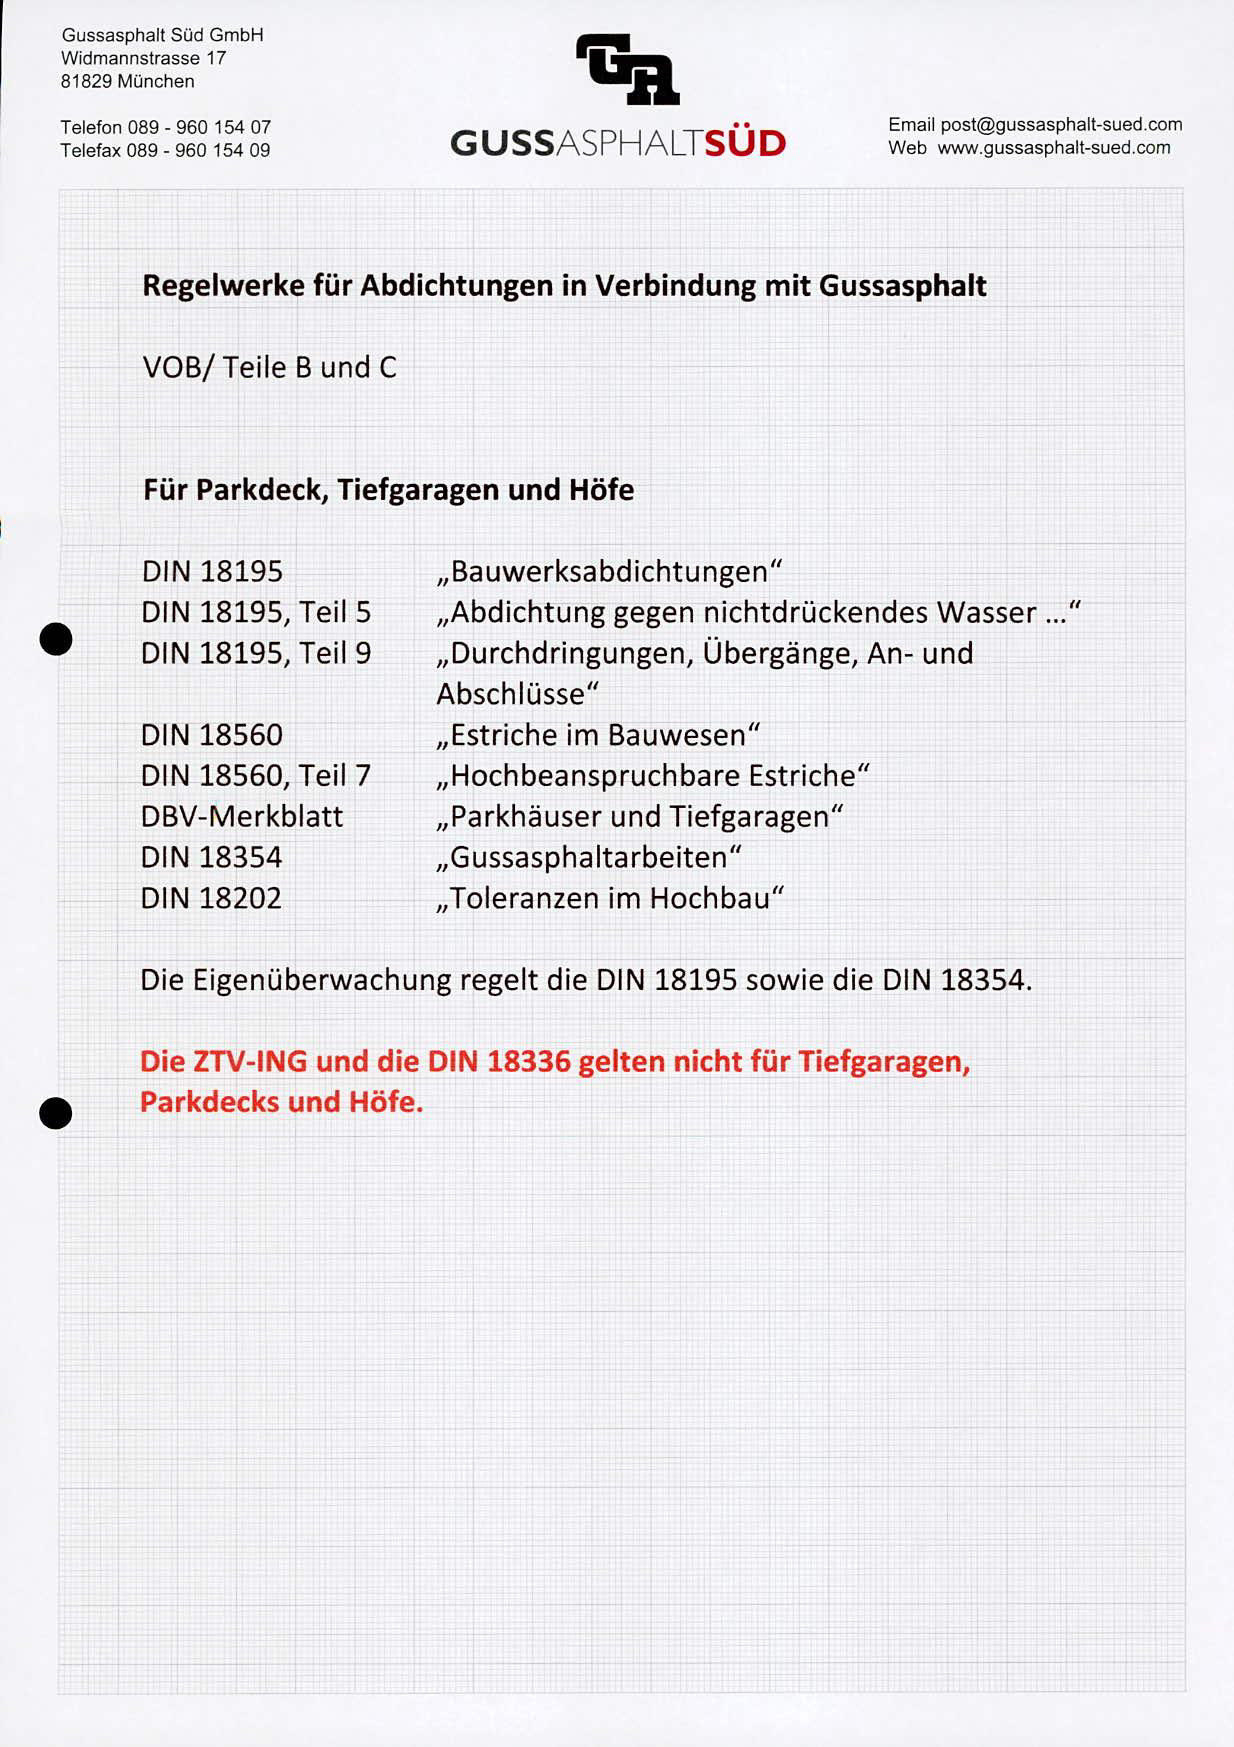 Gussasphalt Süd GmbH Widmannstrasse 17 81829 München Telefon 089-960 154 07 Email postgussasphalt-sued.